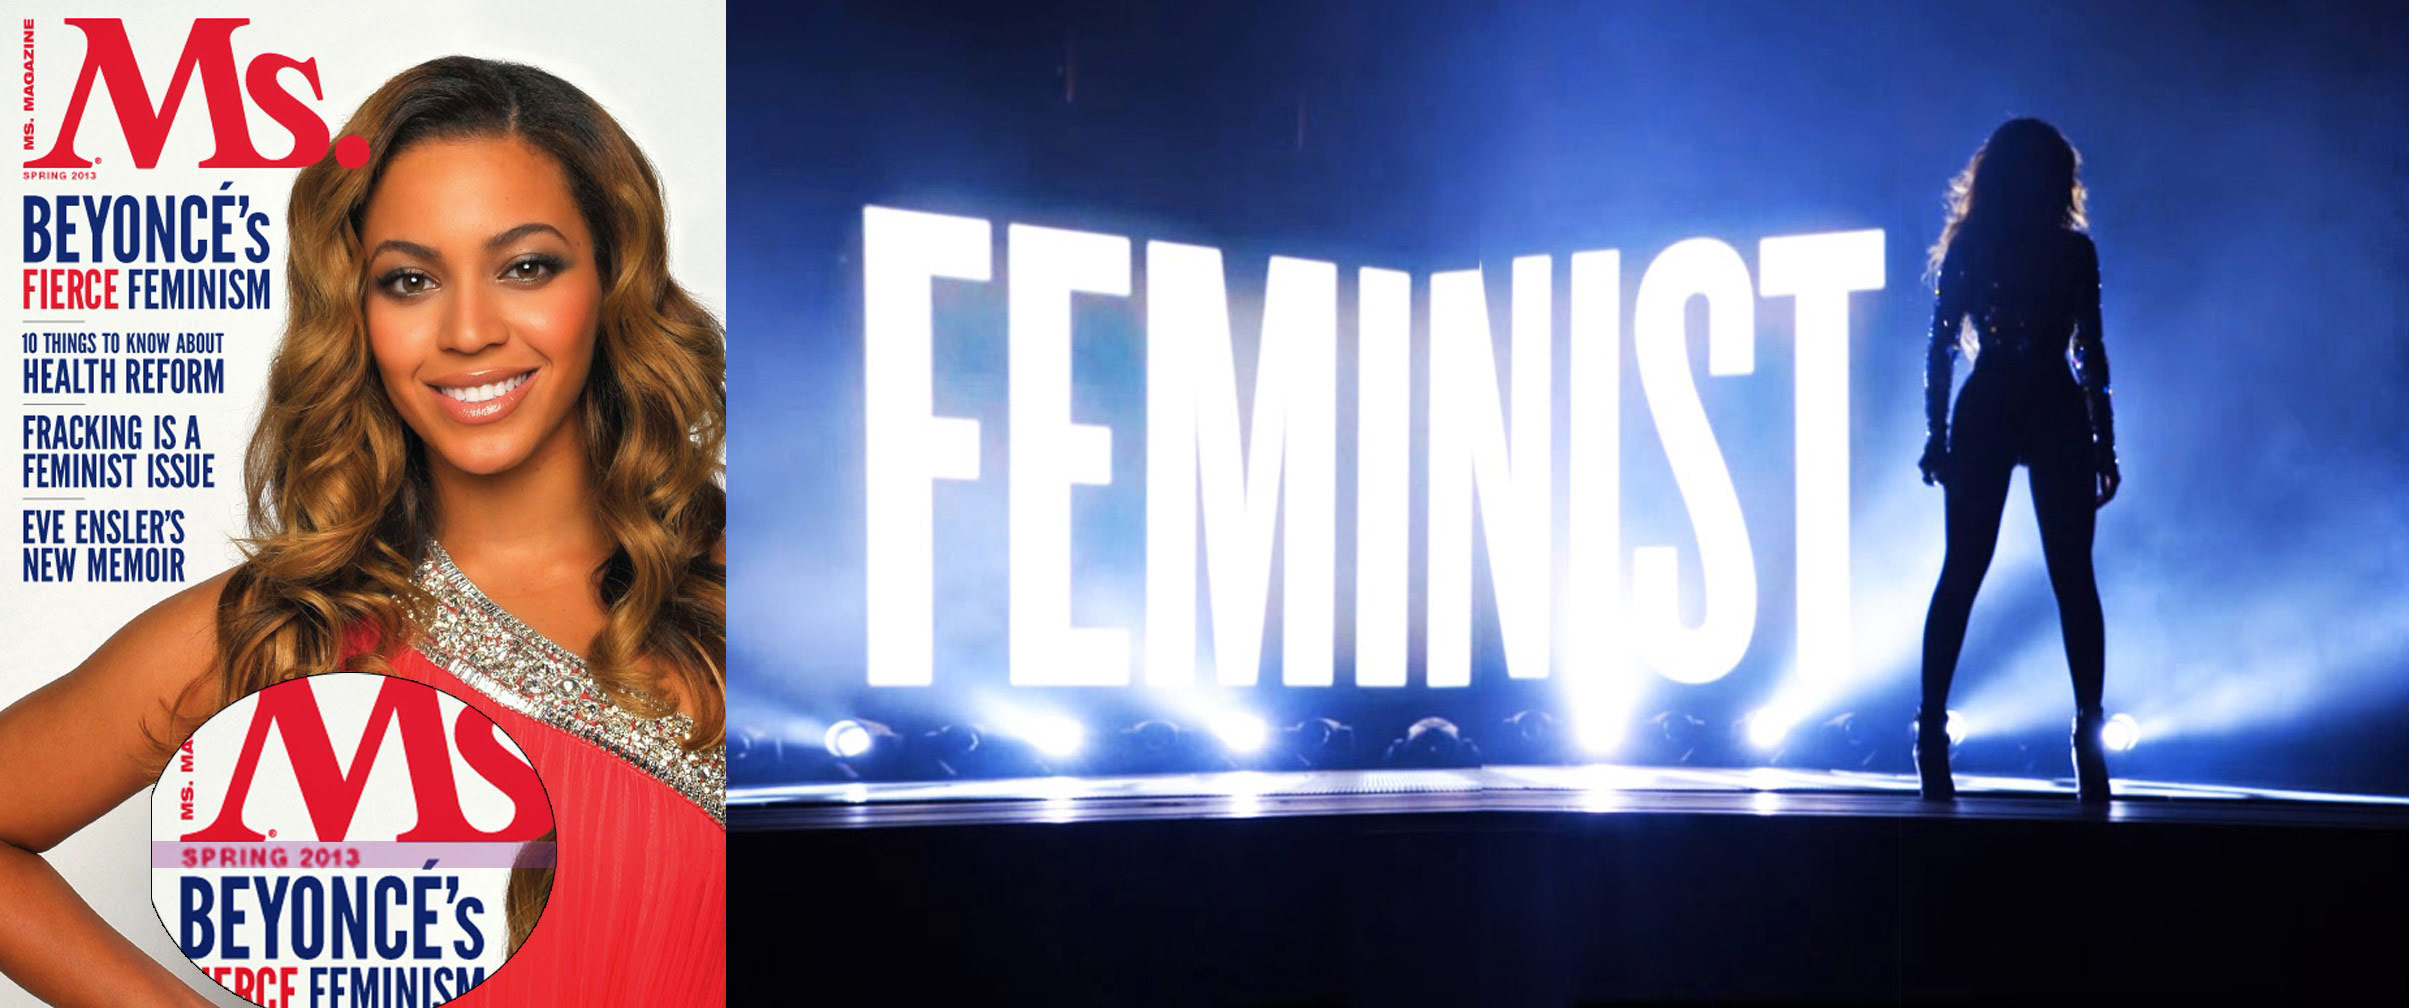 Feminist-popstar